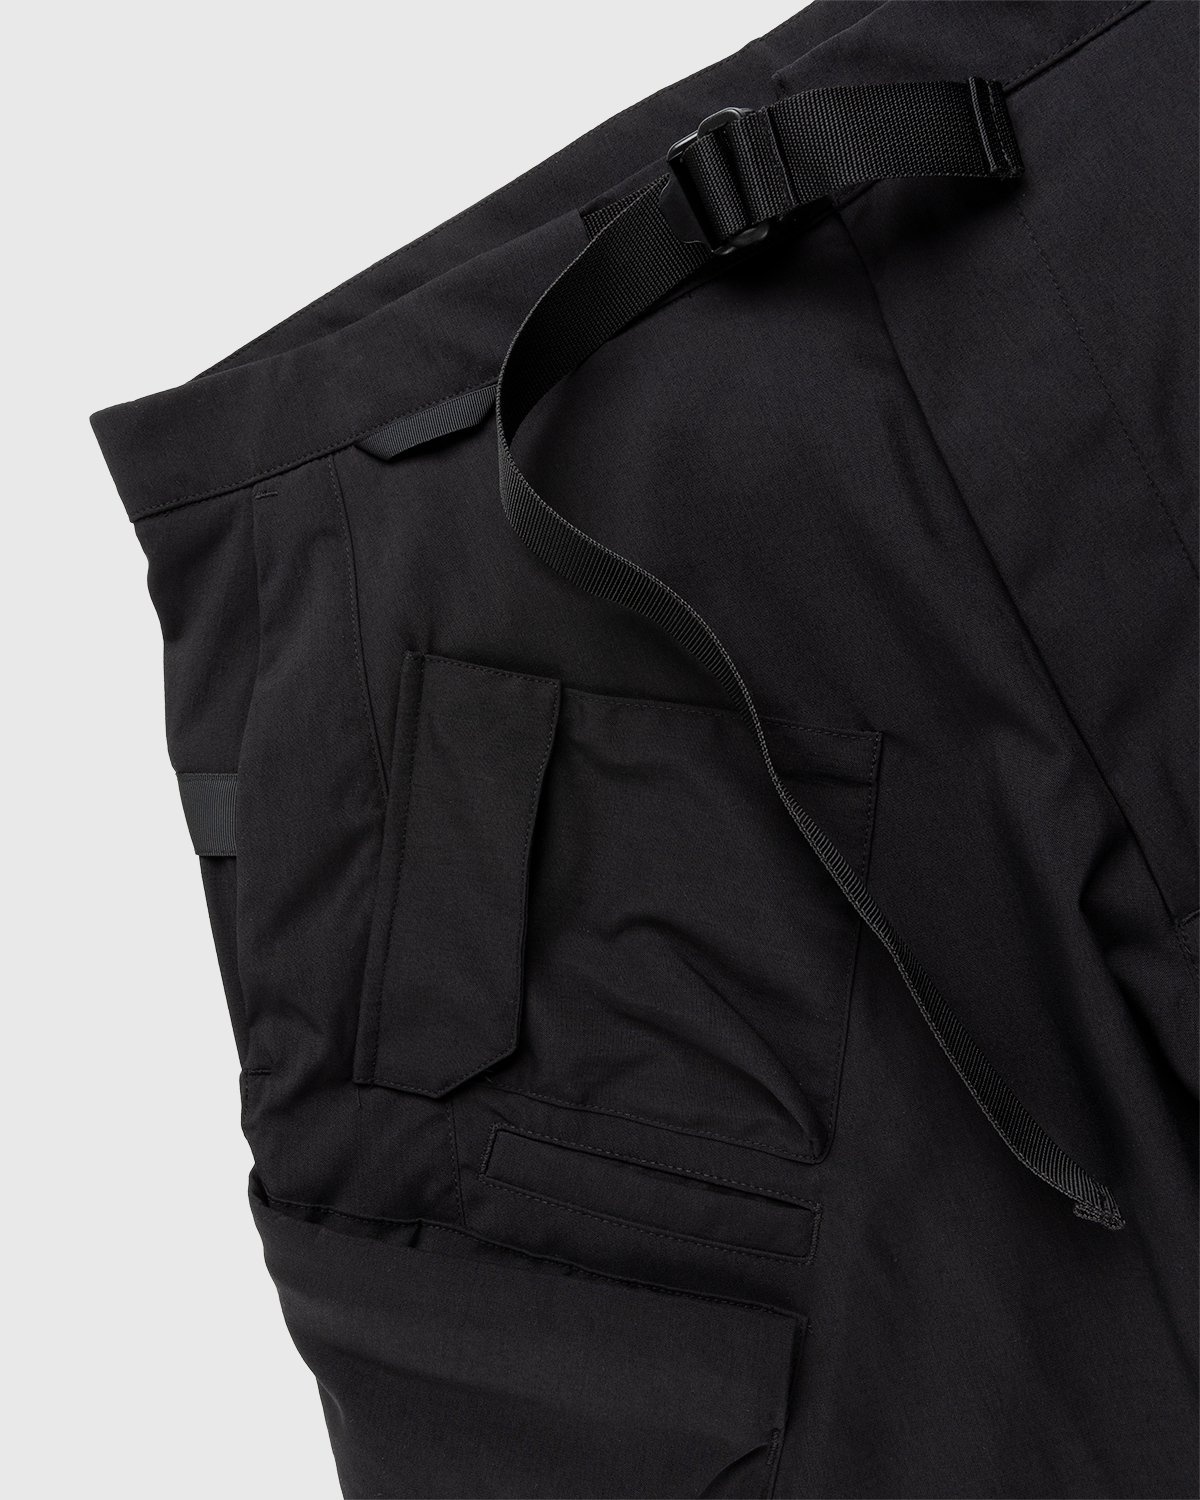 ACRONYM – SP29-M Cargo Shorts Black - Shorts - Black - Image 5